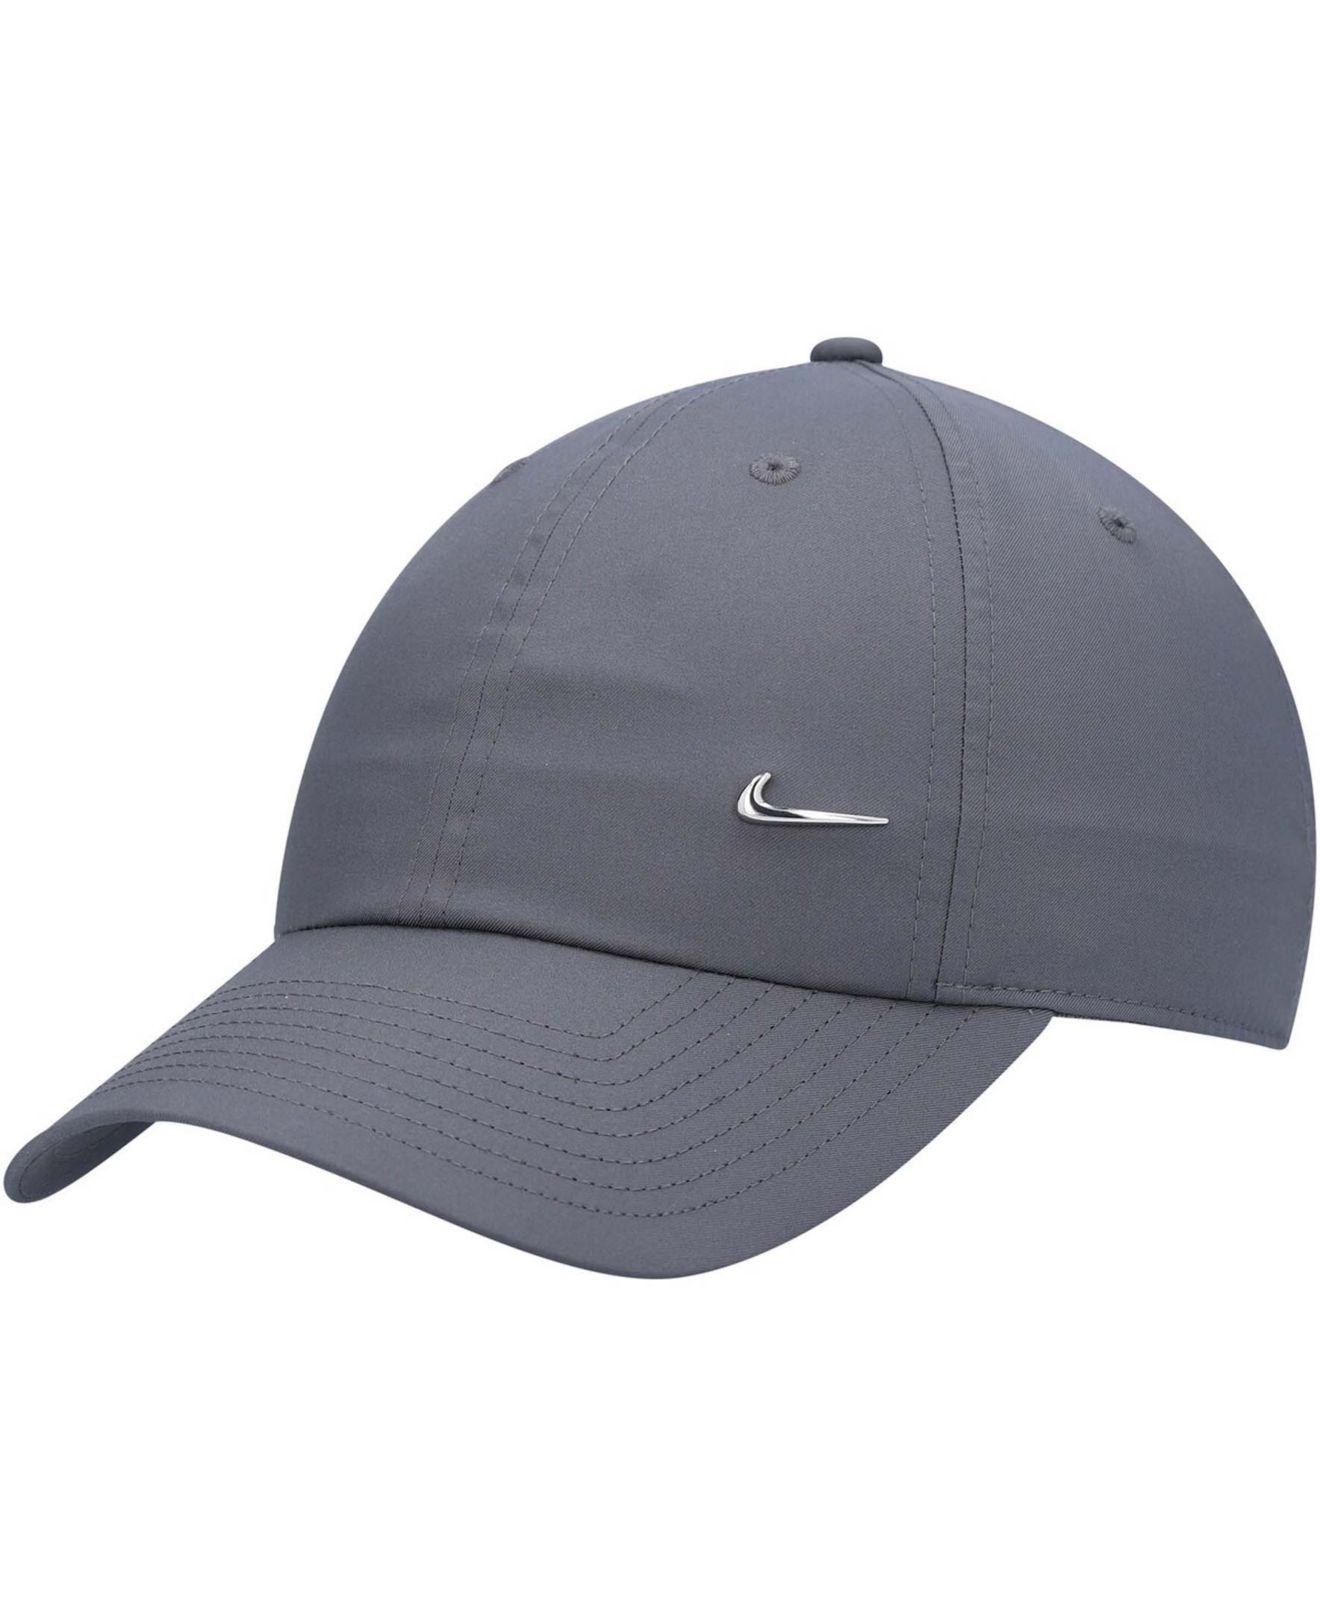 Nike Metal Swoosh Cap in Gray | Lyst